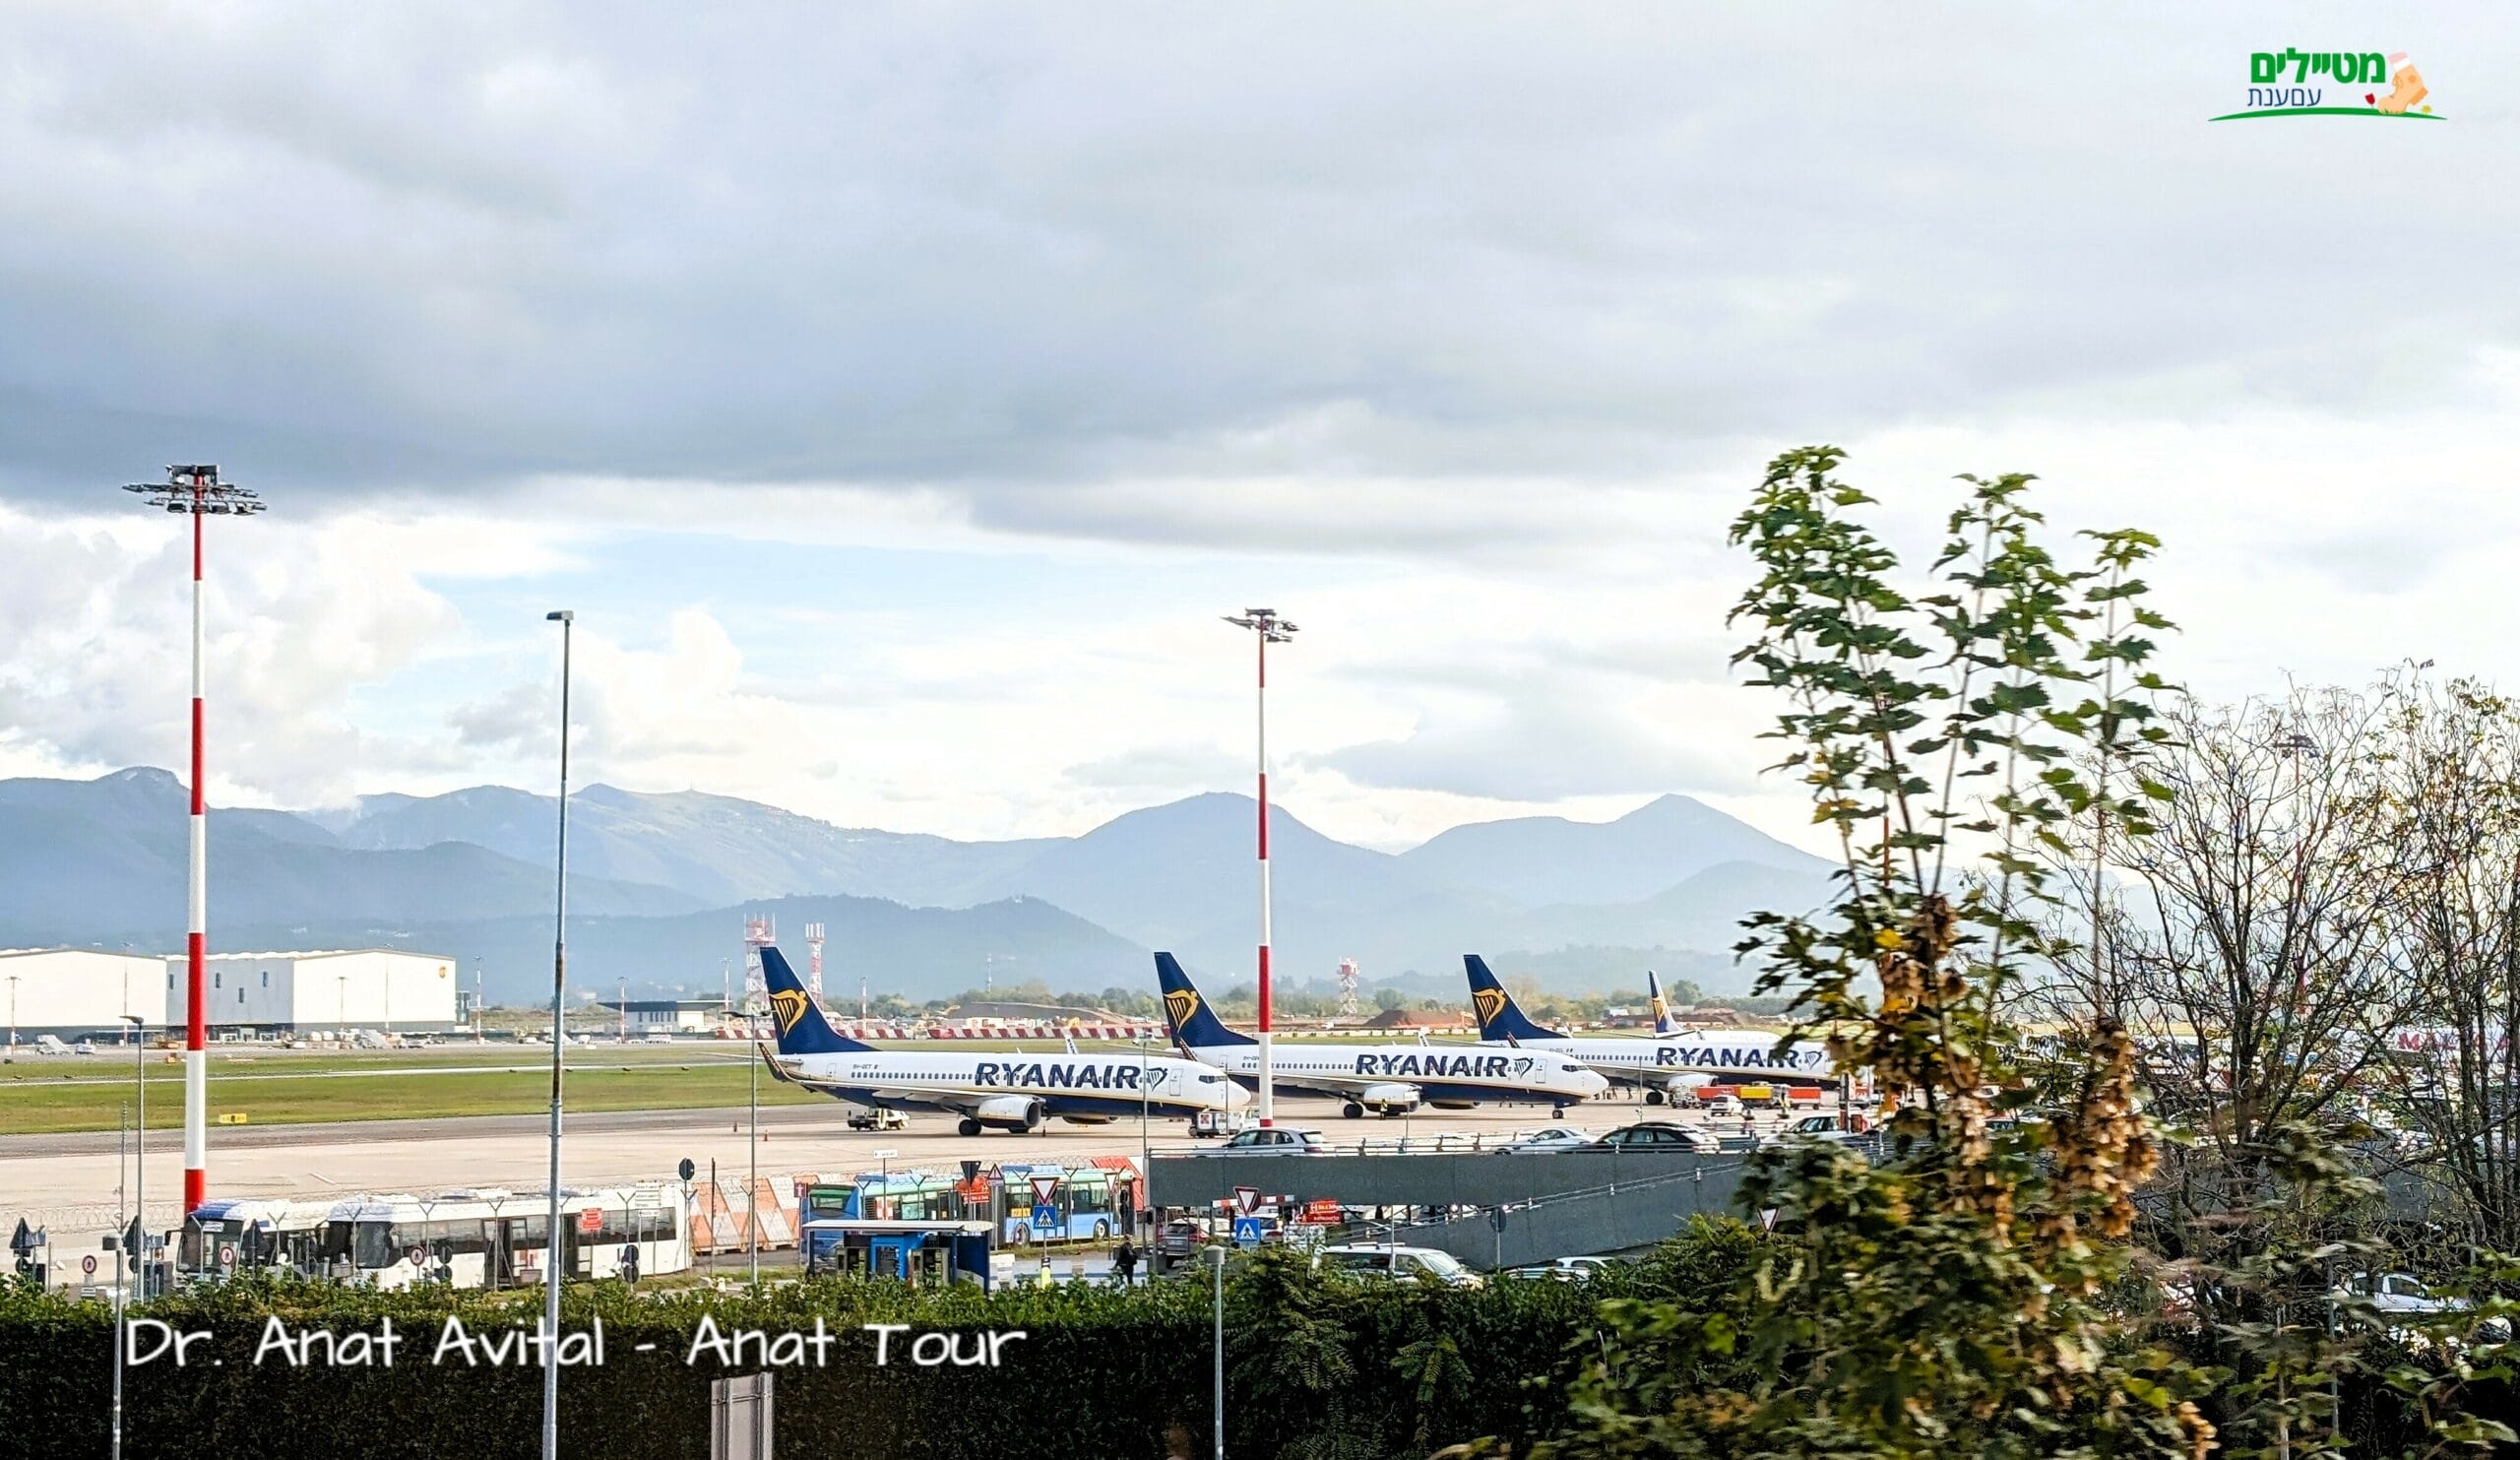 ריינאייר, נמל תעופה אוריו אל סריו ברגמו Aeroporto di Bergamo - Orio al Serio, איטליהף צילום: ד"ר ענת אביטל